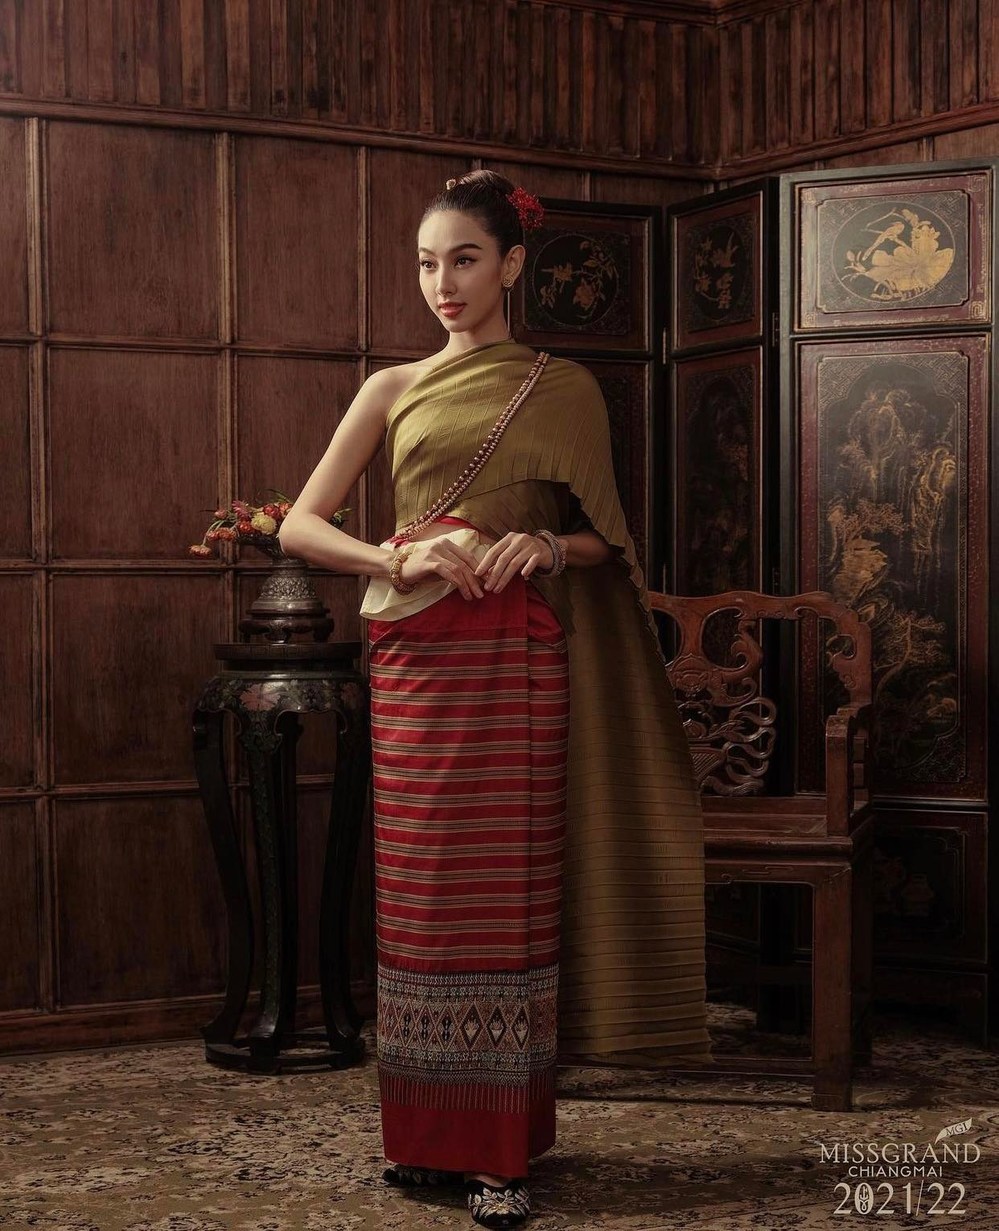  
Chụp ảnh trong bối cảnh những ngôi nhà truyền thống của Thái Lan càng làm Thùy Tiên quý tộc, thu hút hơn. (Ảnh: Instagram tienng12)